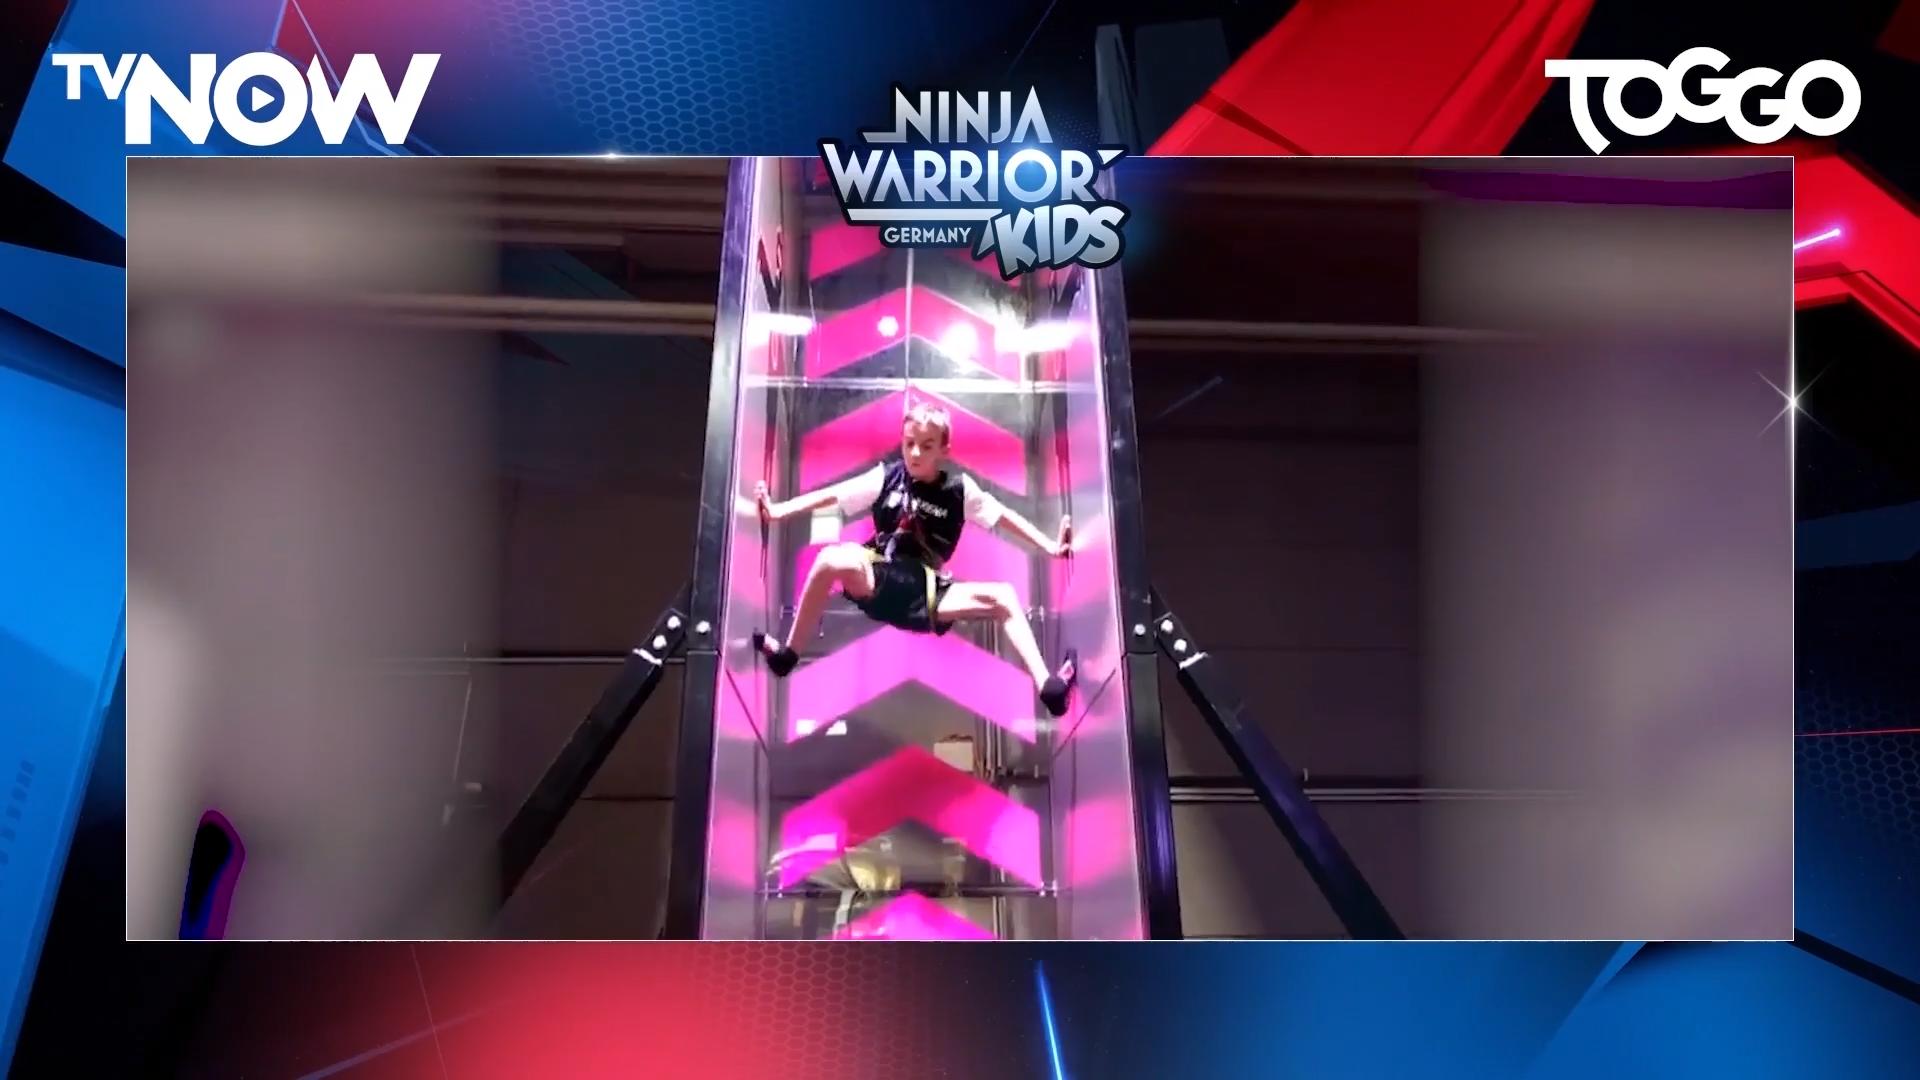 Ab dem 13. Juli auf TVNOW: "Ninja Warrior Germany Kids" Endlich Kinder im Parcours!